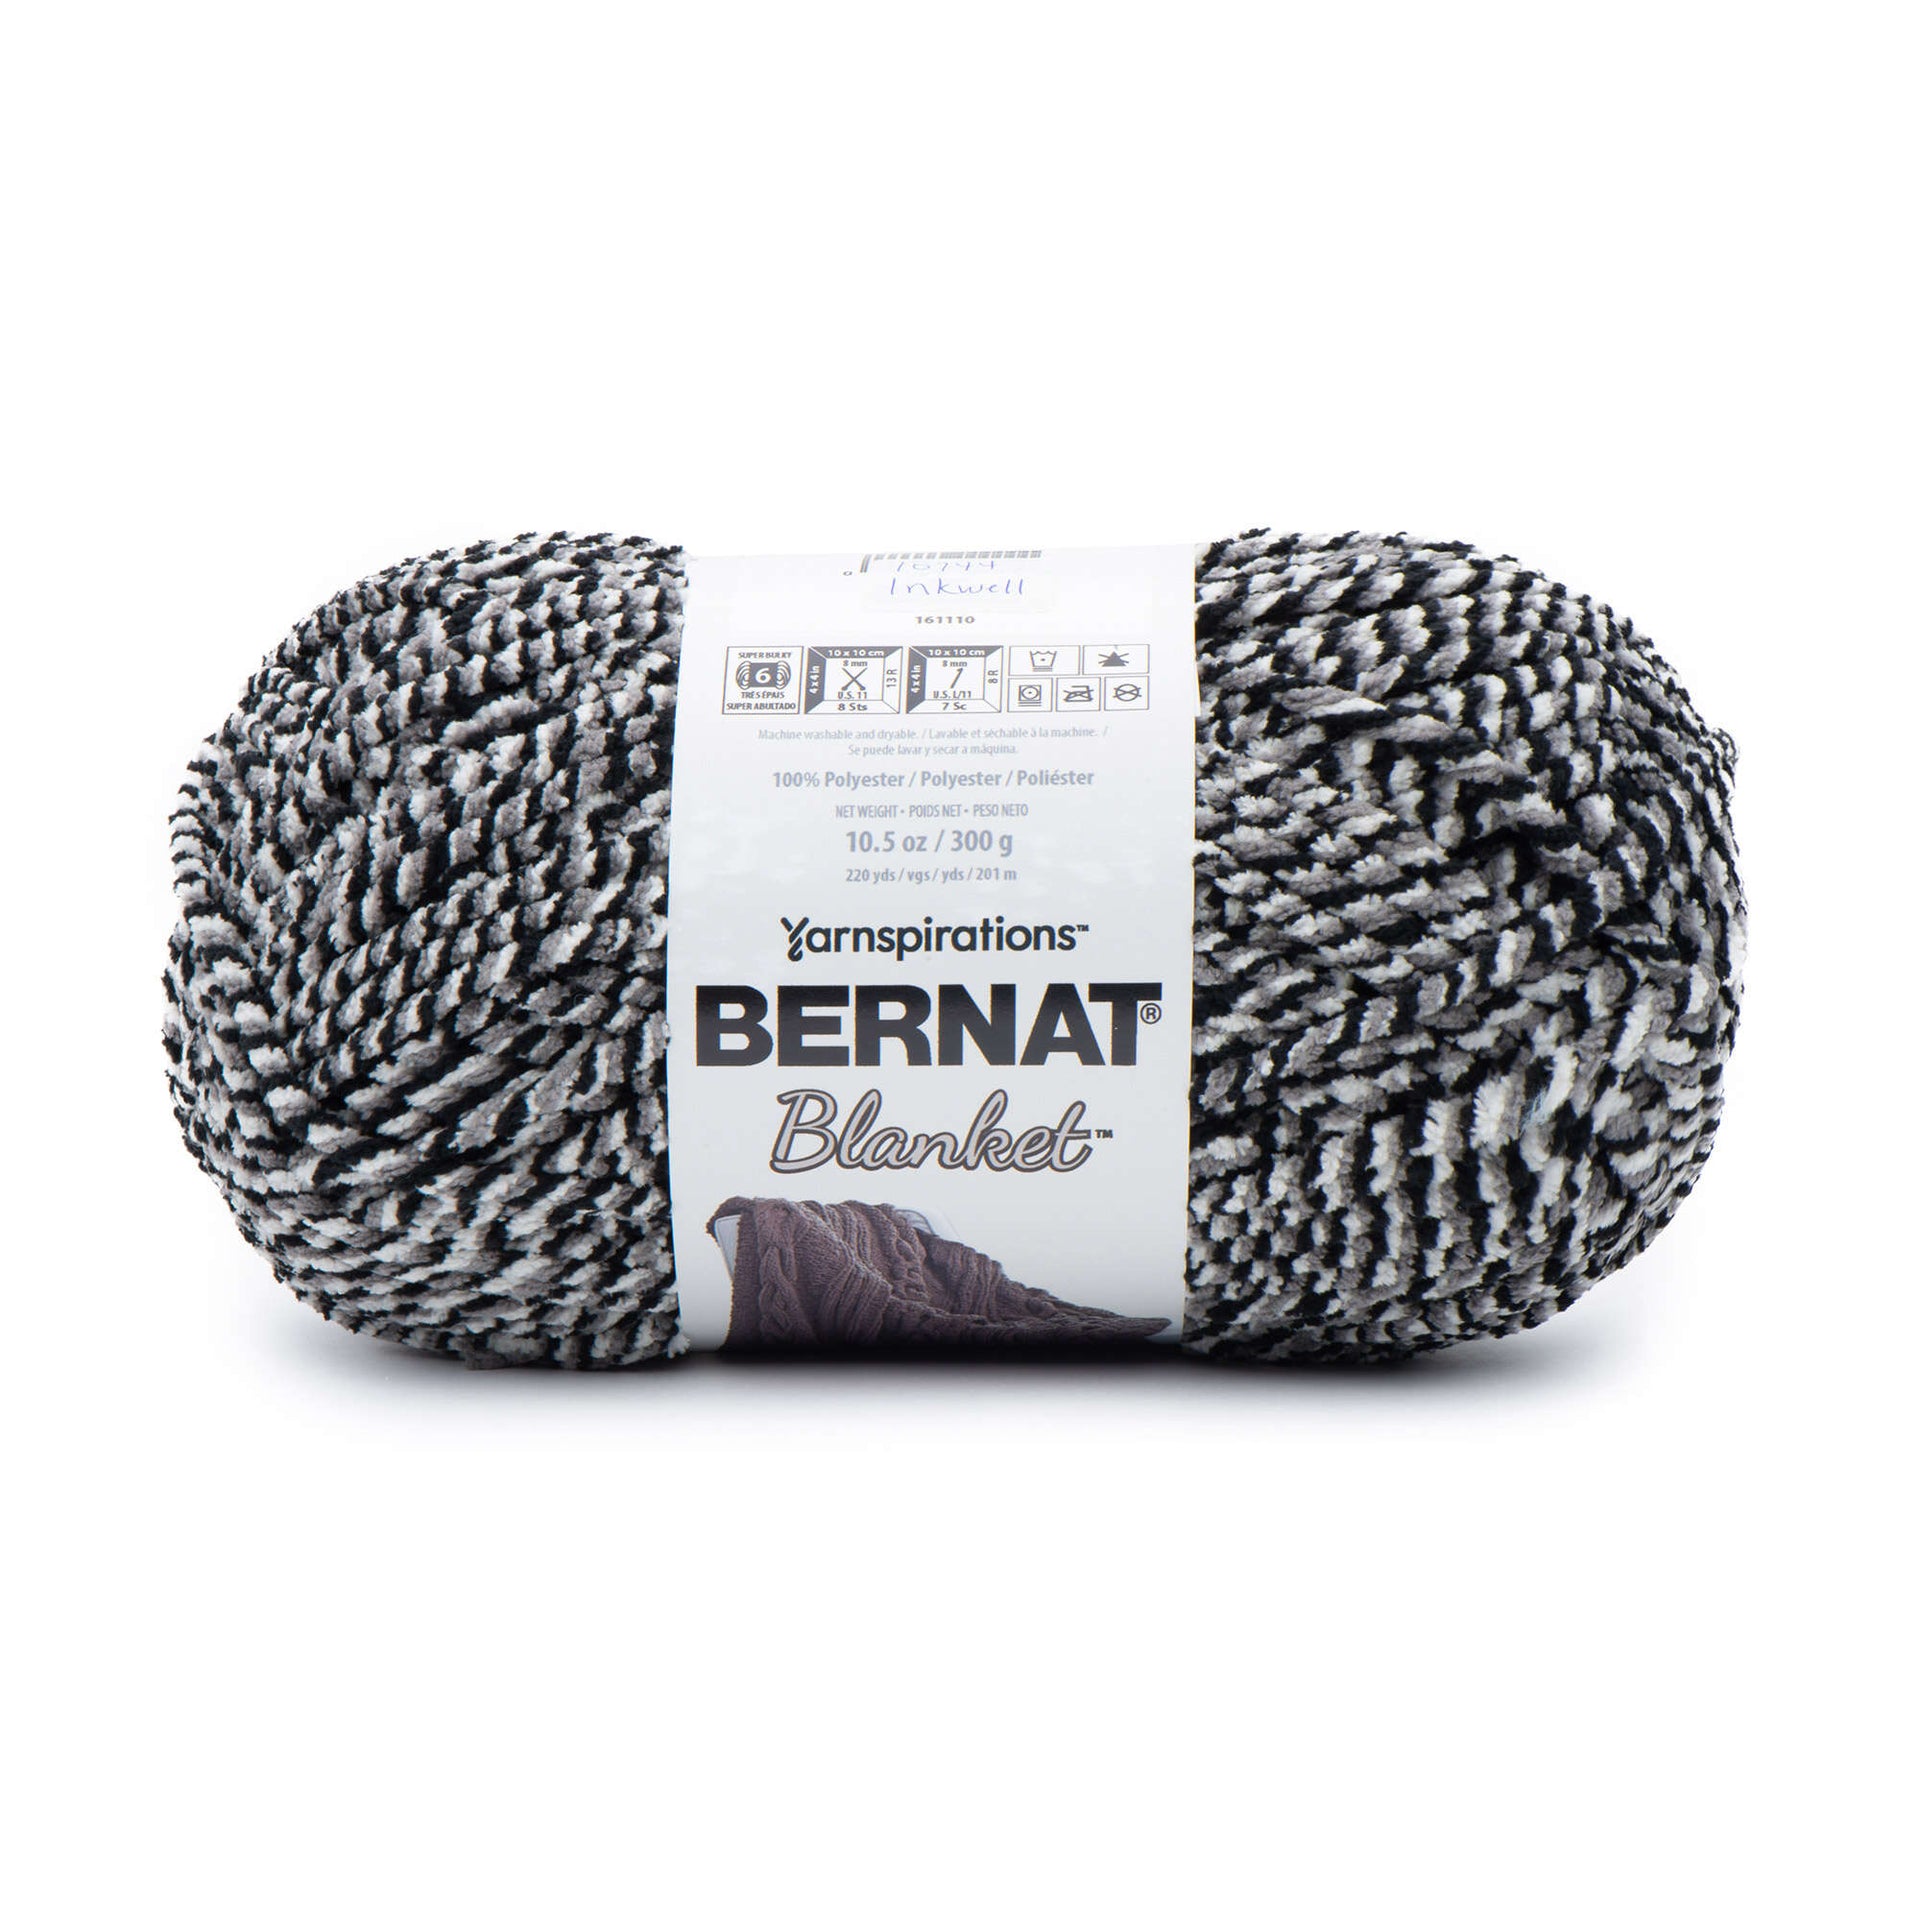 Bernat Velvet Plus Vapor Gray Yarn - 2 Pack of 300g/10.5oz - Polyester - 6 Super Bulky - Knitting/Crochet